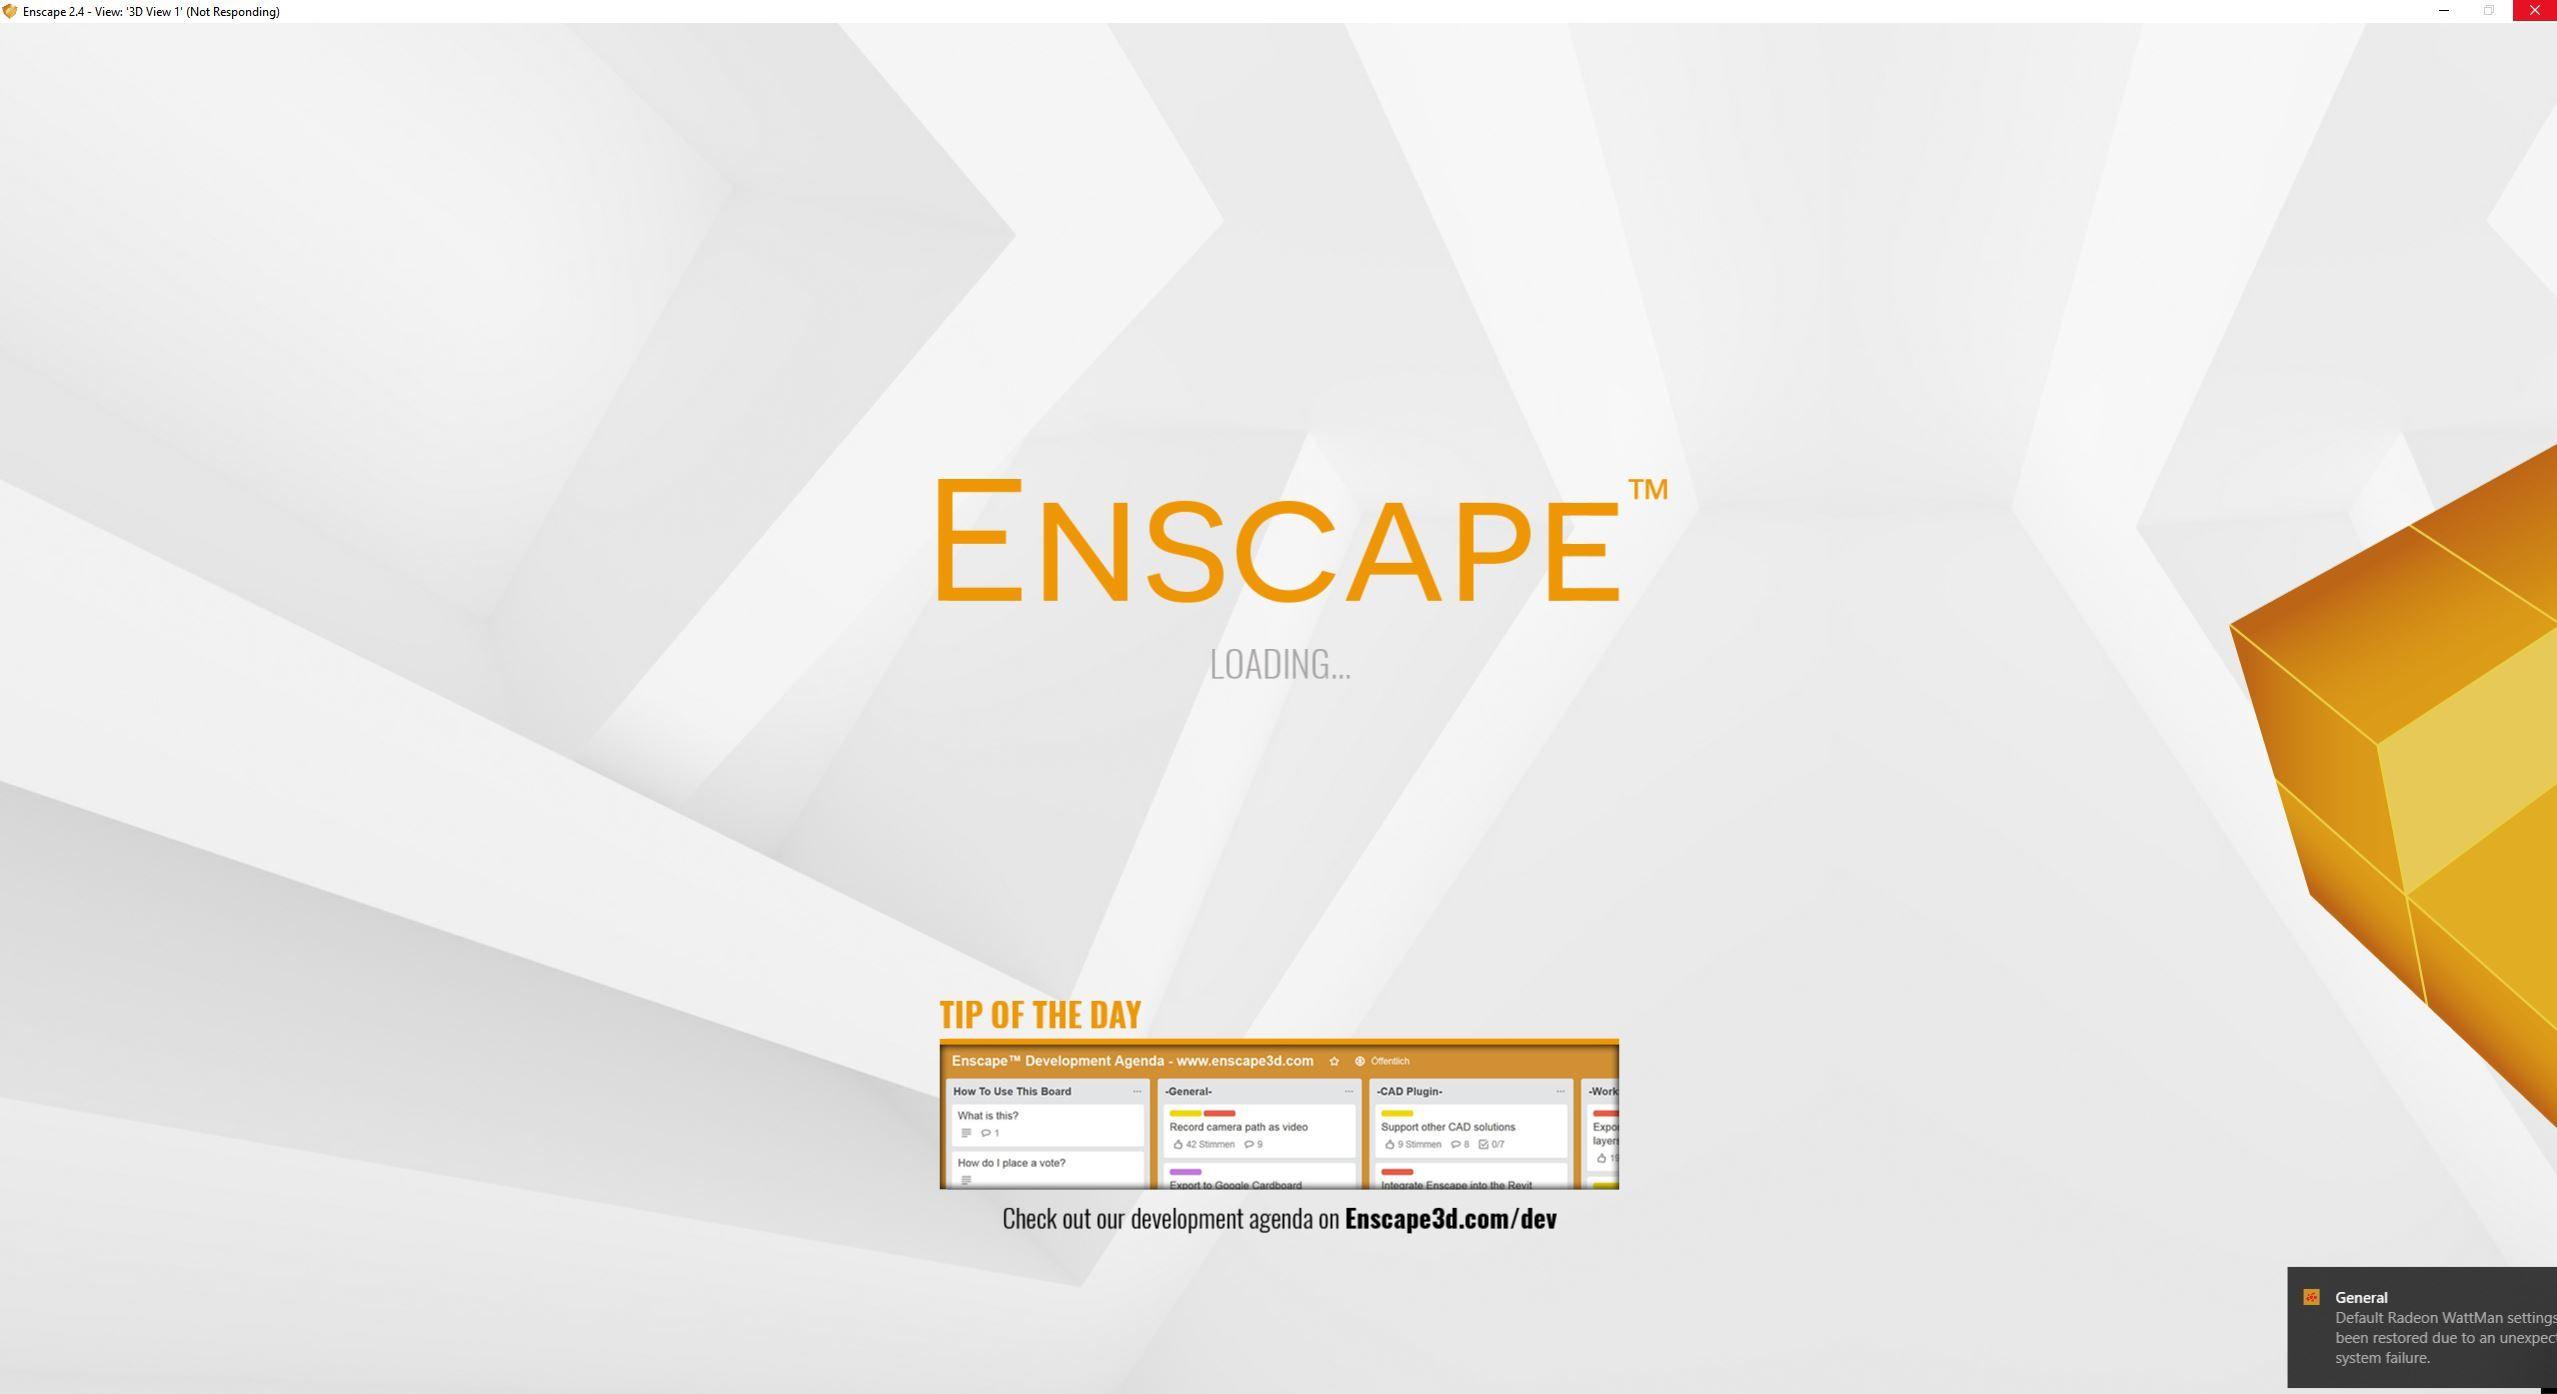 Enscape Logo - Enscape GPU issue - Revit - Enscape Community Forum